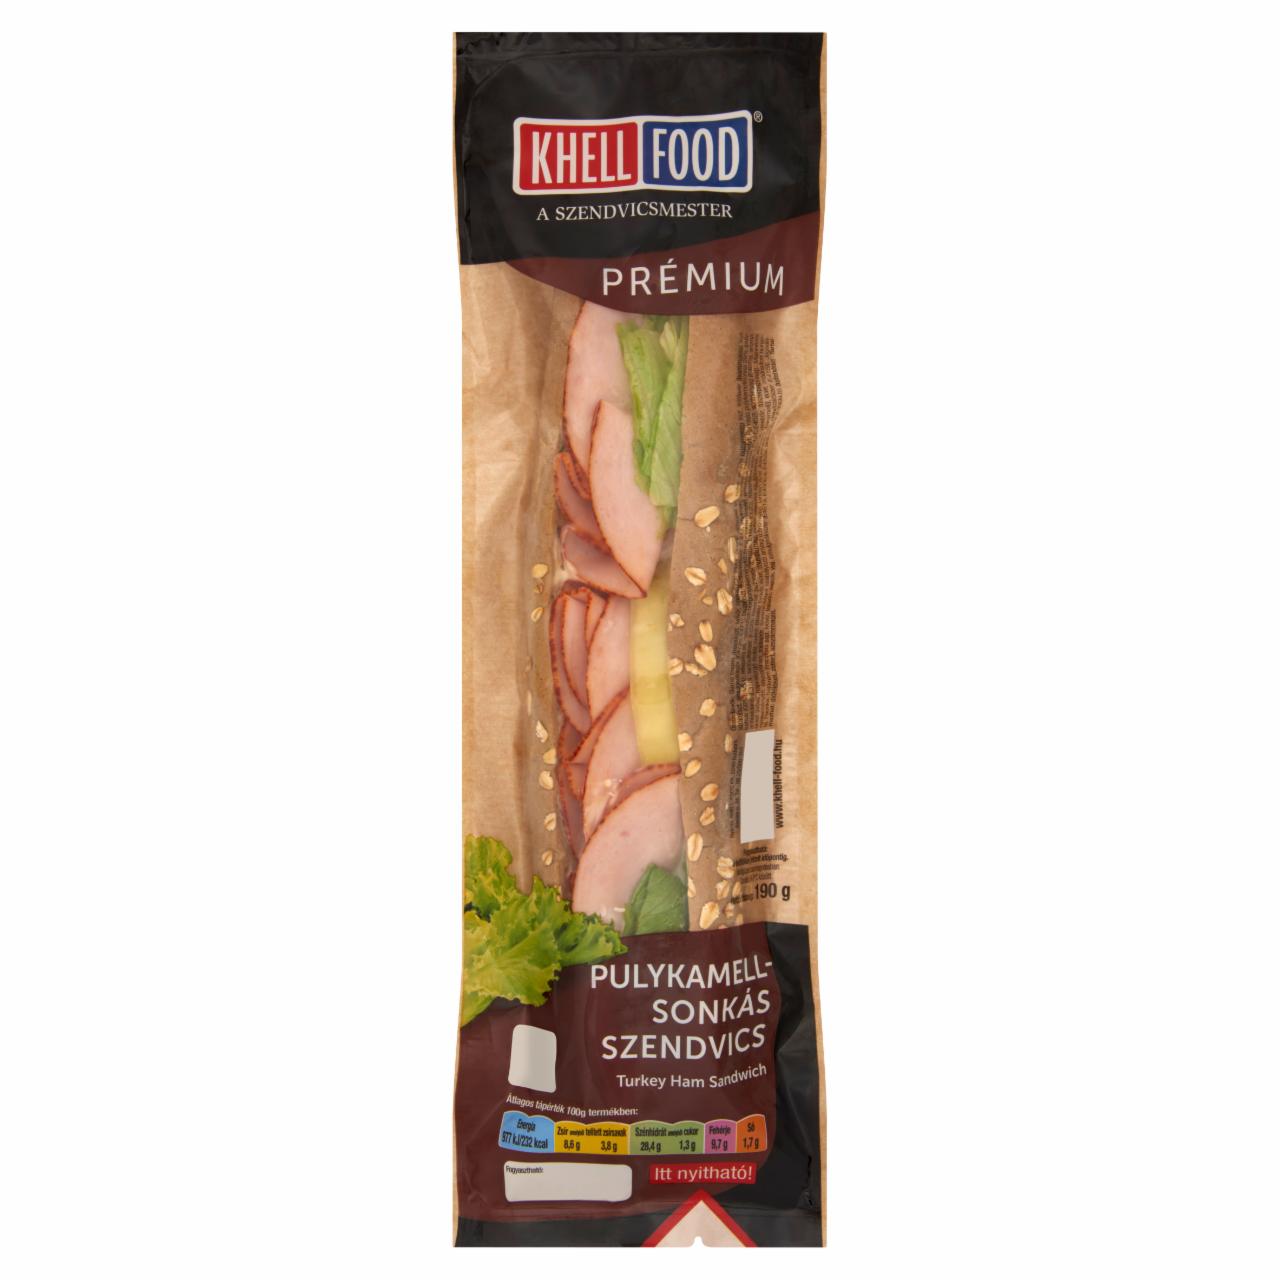 Képek - Khell-Food Prémium pulykamell-sonkás szendvics 190 g